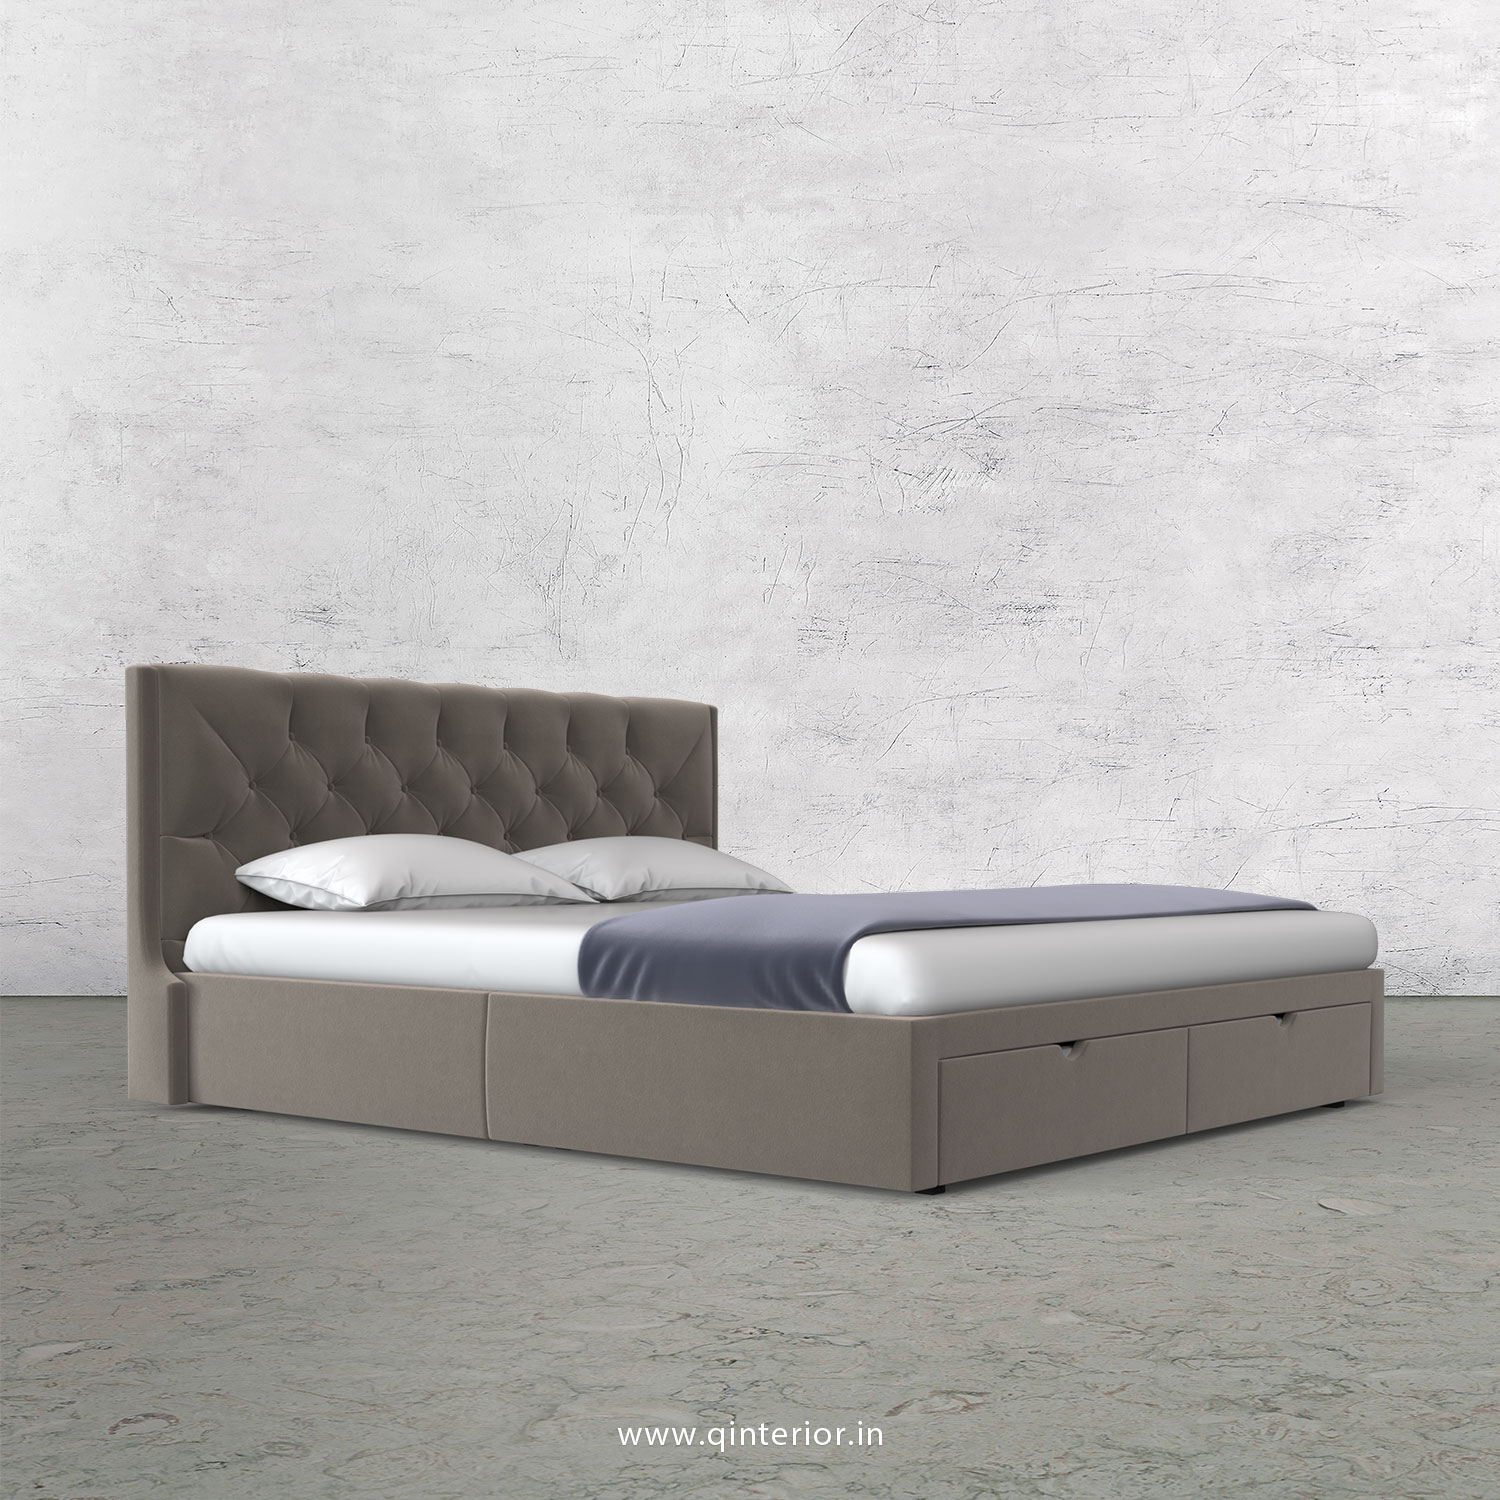 Scorpius Queen Storage Bed in Velvet Fabric - QBD001 VL12